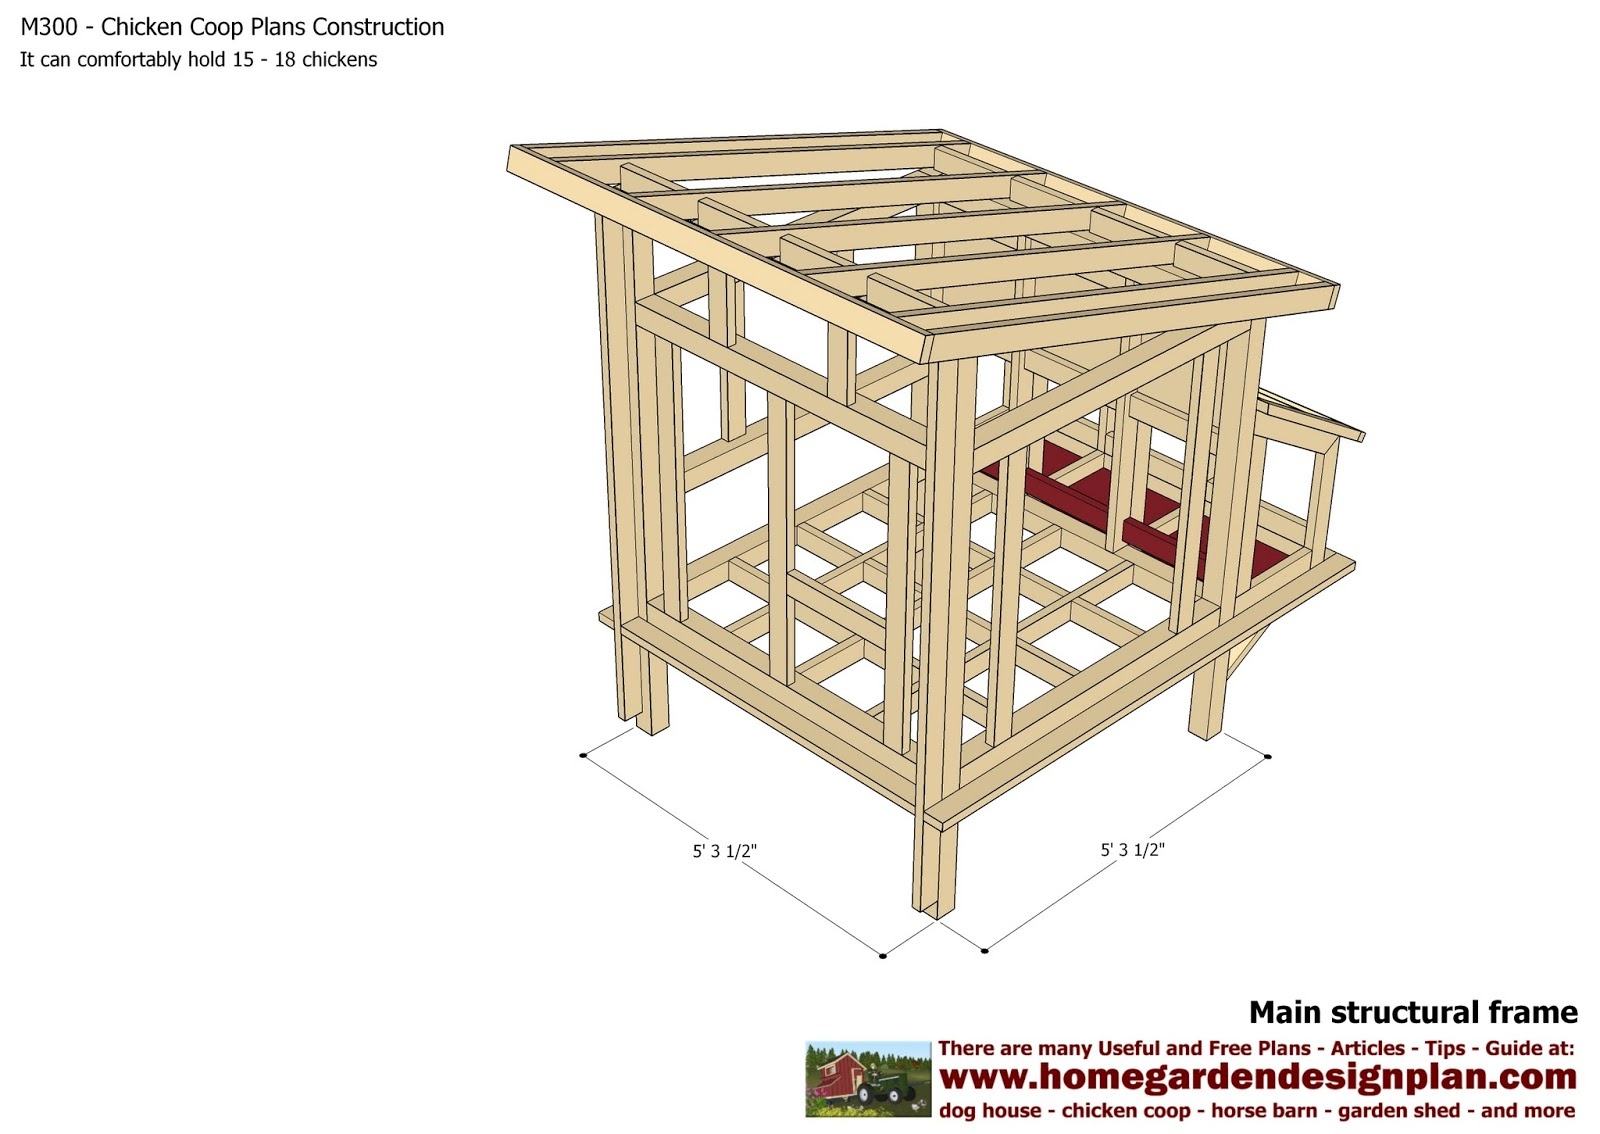 Home Garden Plans: M300 - Chicken Coop Plans - Chicken Coop Design - Free Printable Chicken Coop Plans